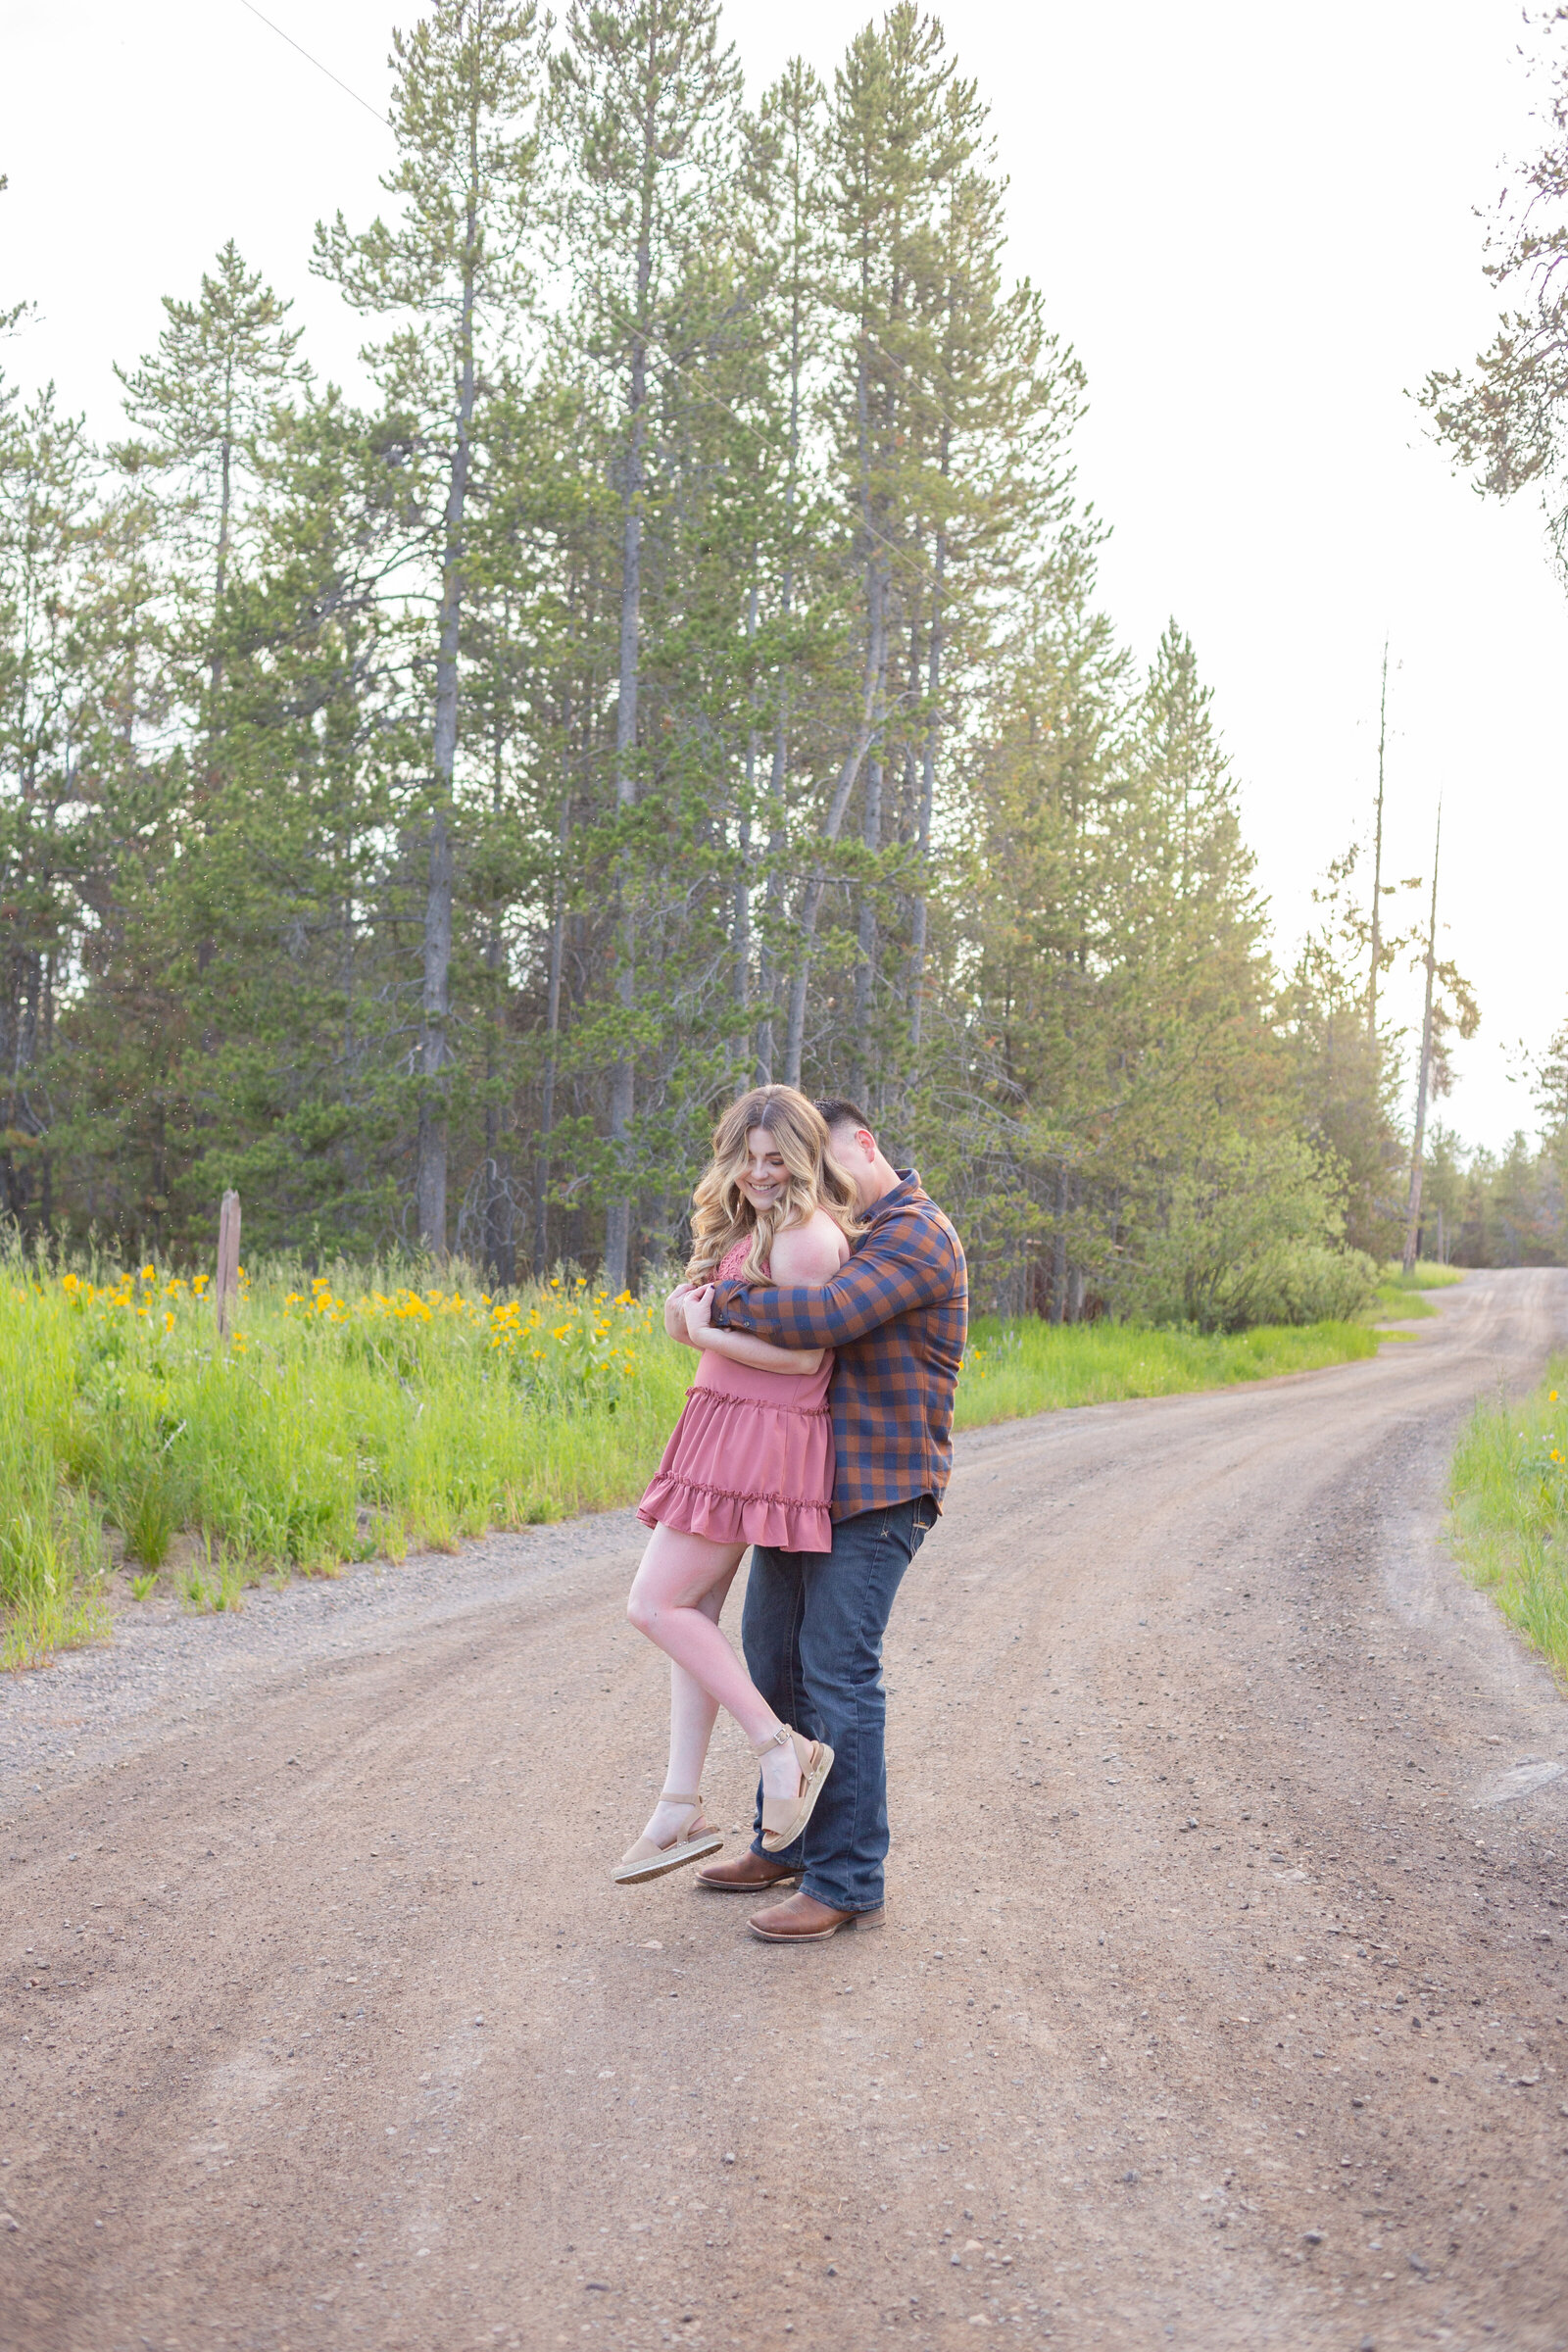 Idaho Falls Photographers capture couple laughing